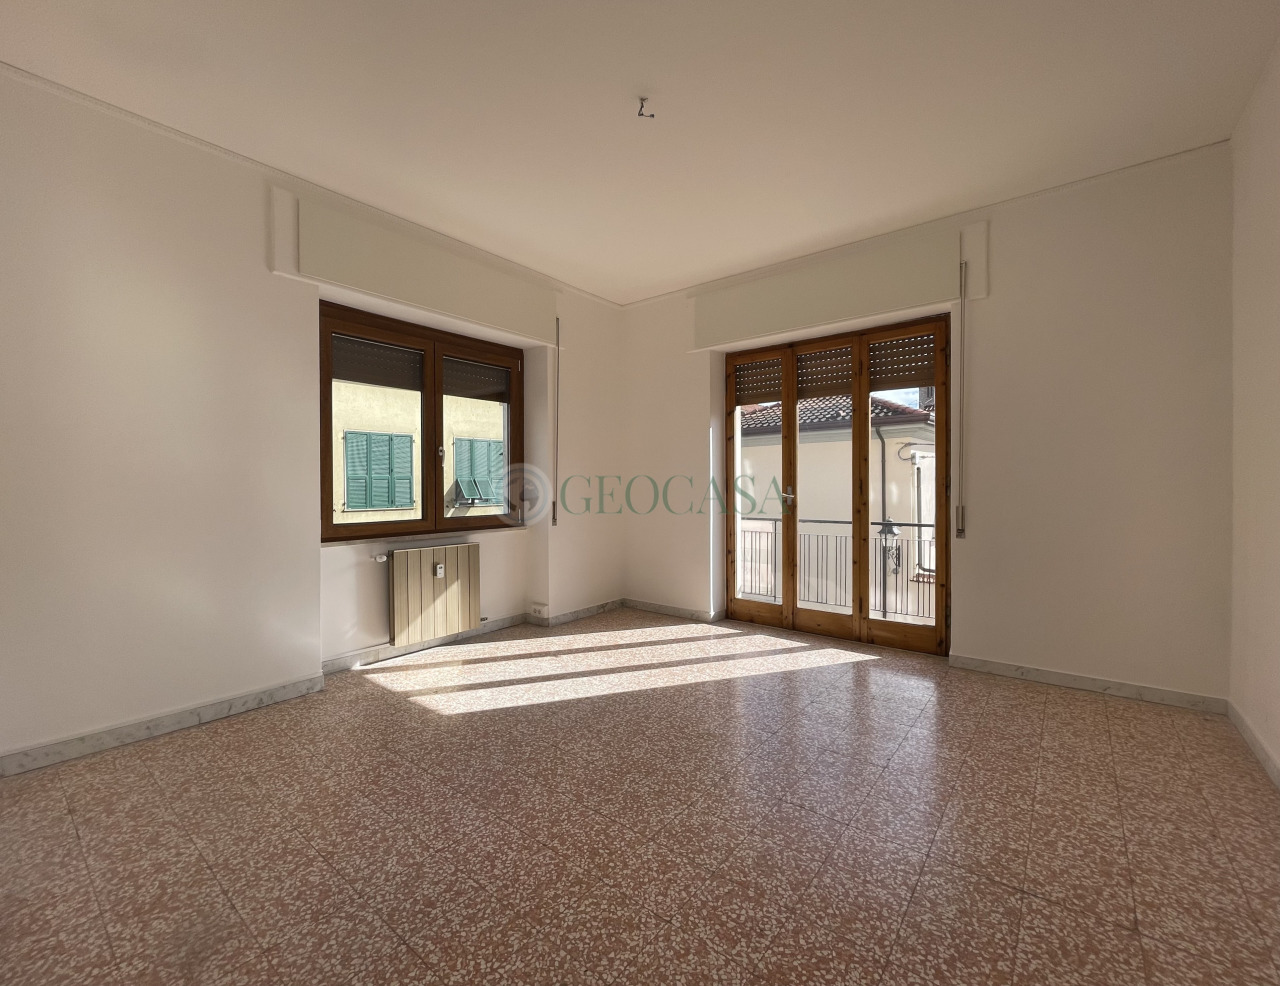 Appartamento in vendita a Sarzana, 4 locali, prezzo € 210.000 | PortaleAgenzieImmobiliari.it